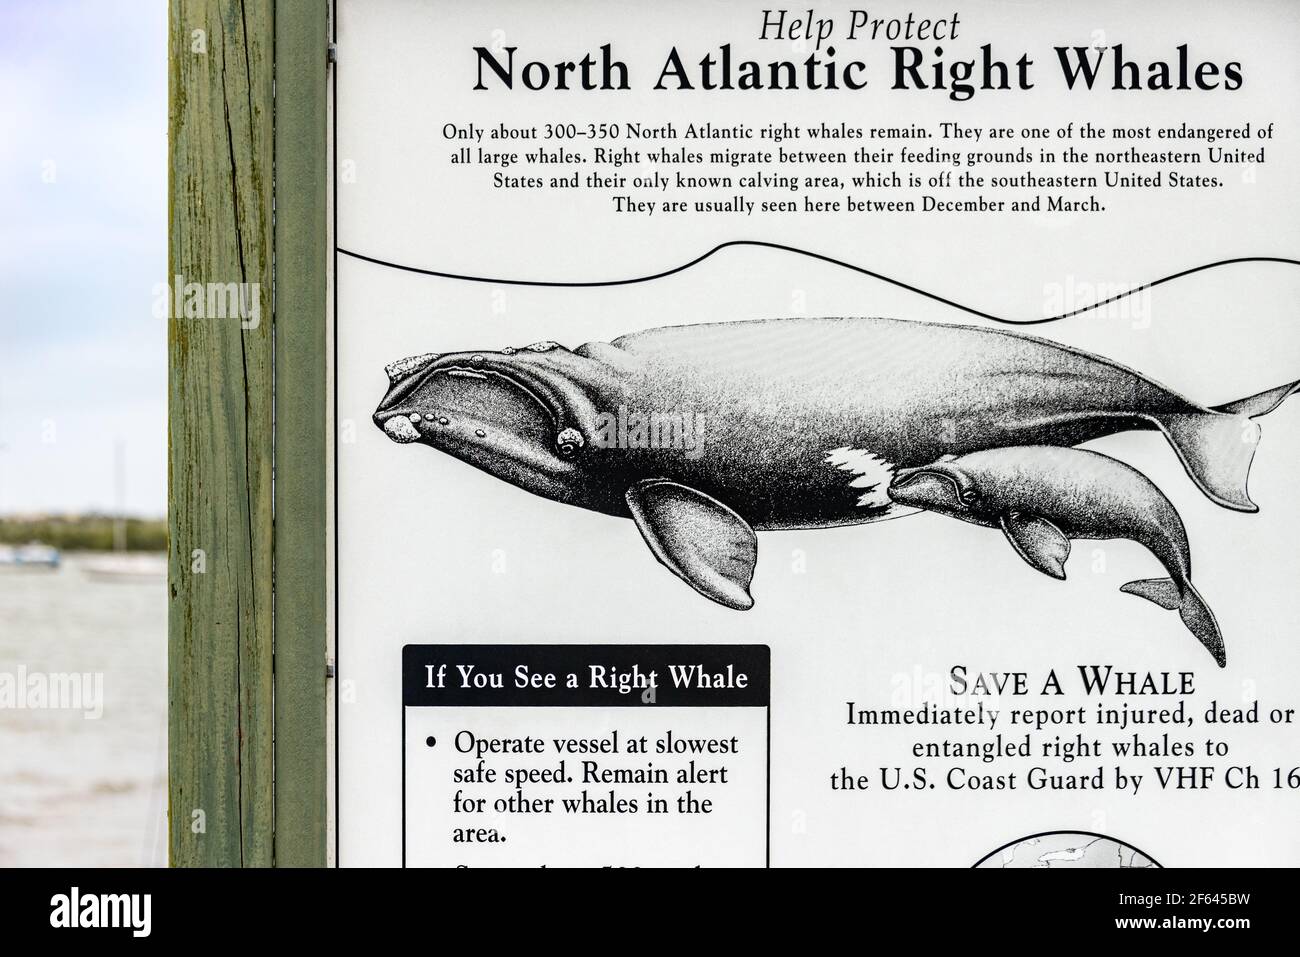 Panneau d'alerte pour les plaisanteurs à la rampe d'accès pour bateaux du phare d'Anastasia pour la protection des baleines noires de l'Atlantique Nord, l'une des plus menacées de toutes les grandes baleines. Banque D'Images